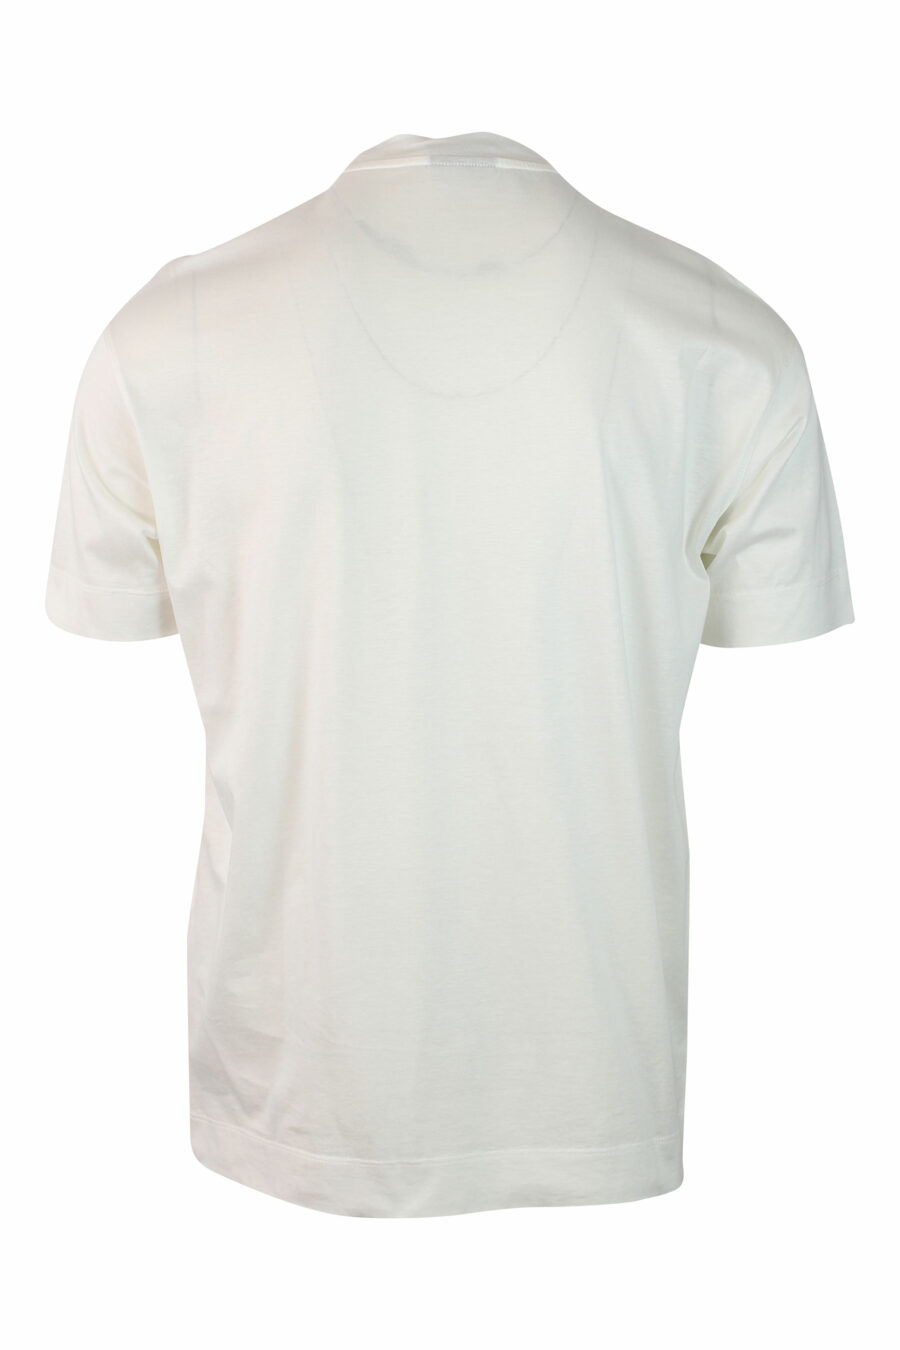 Camiseta blanca con maxilogo águila degradé - IMG 0138